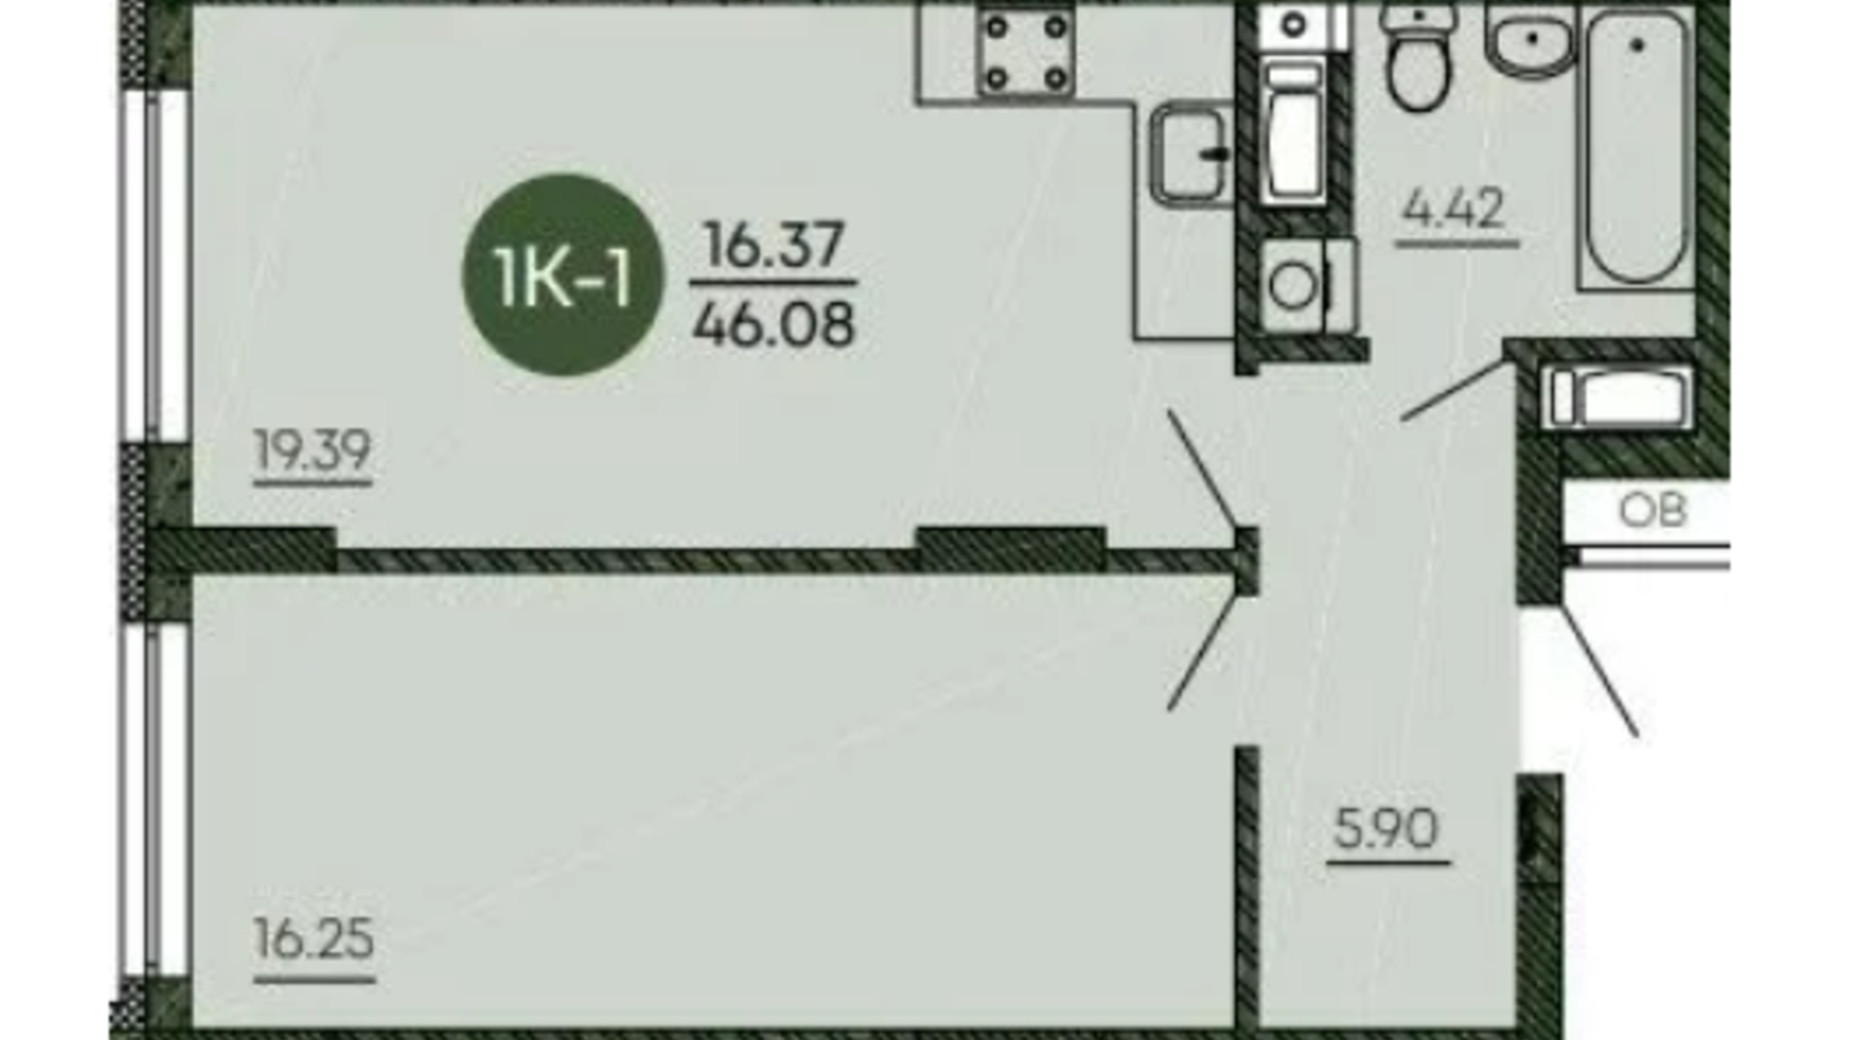 Планировка 1-комнатной квартиры в ЖК Оранжерея 46.08 м², фото 586474